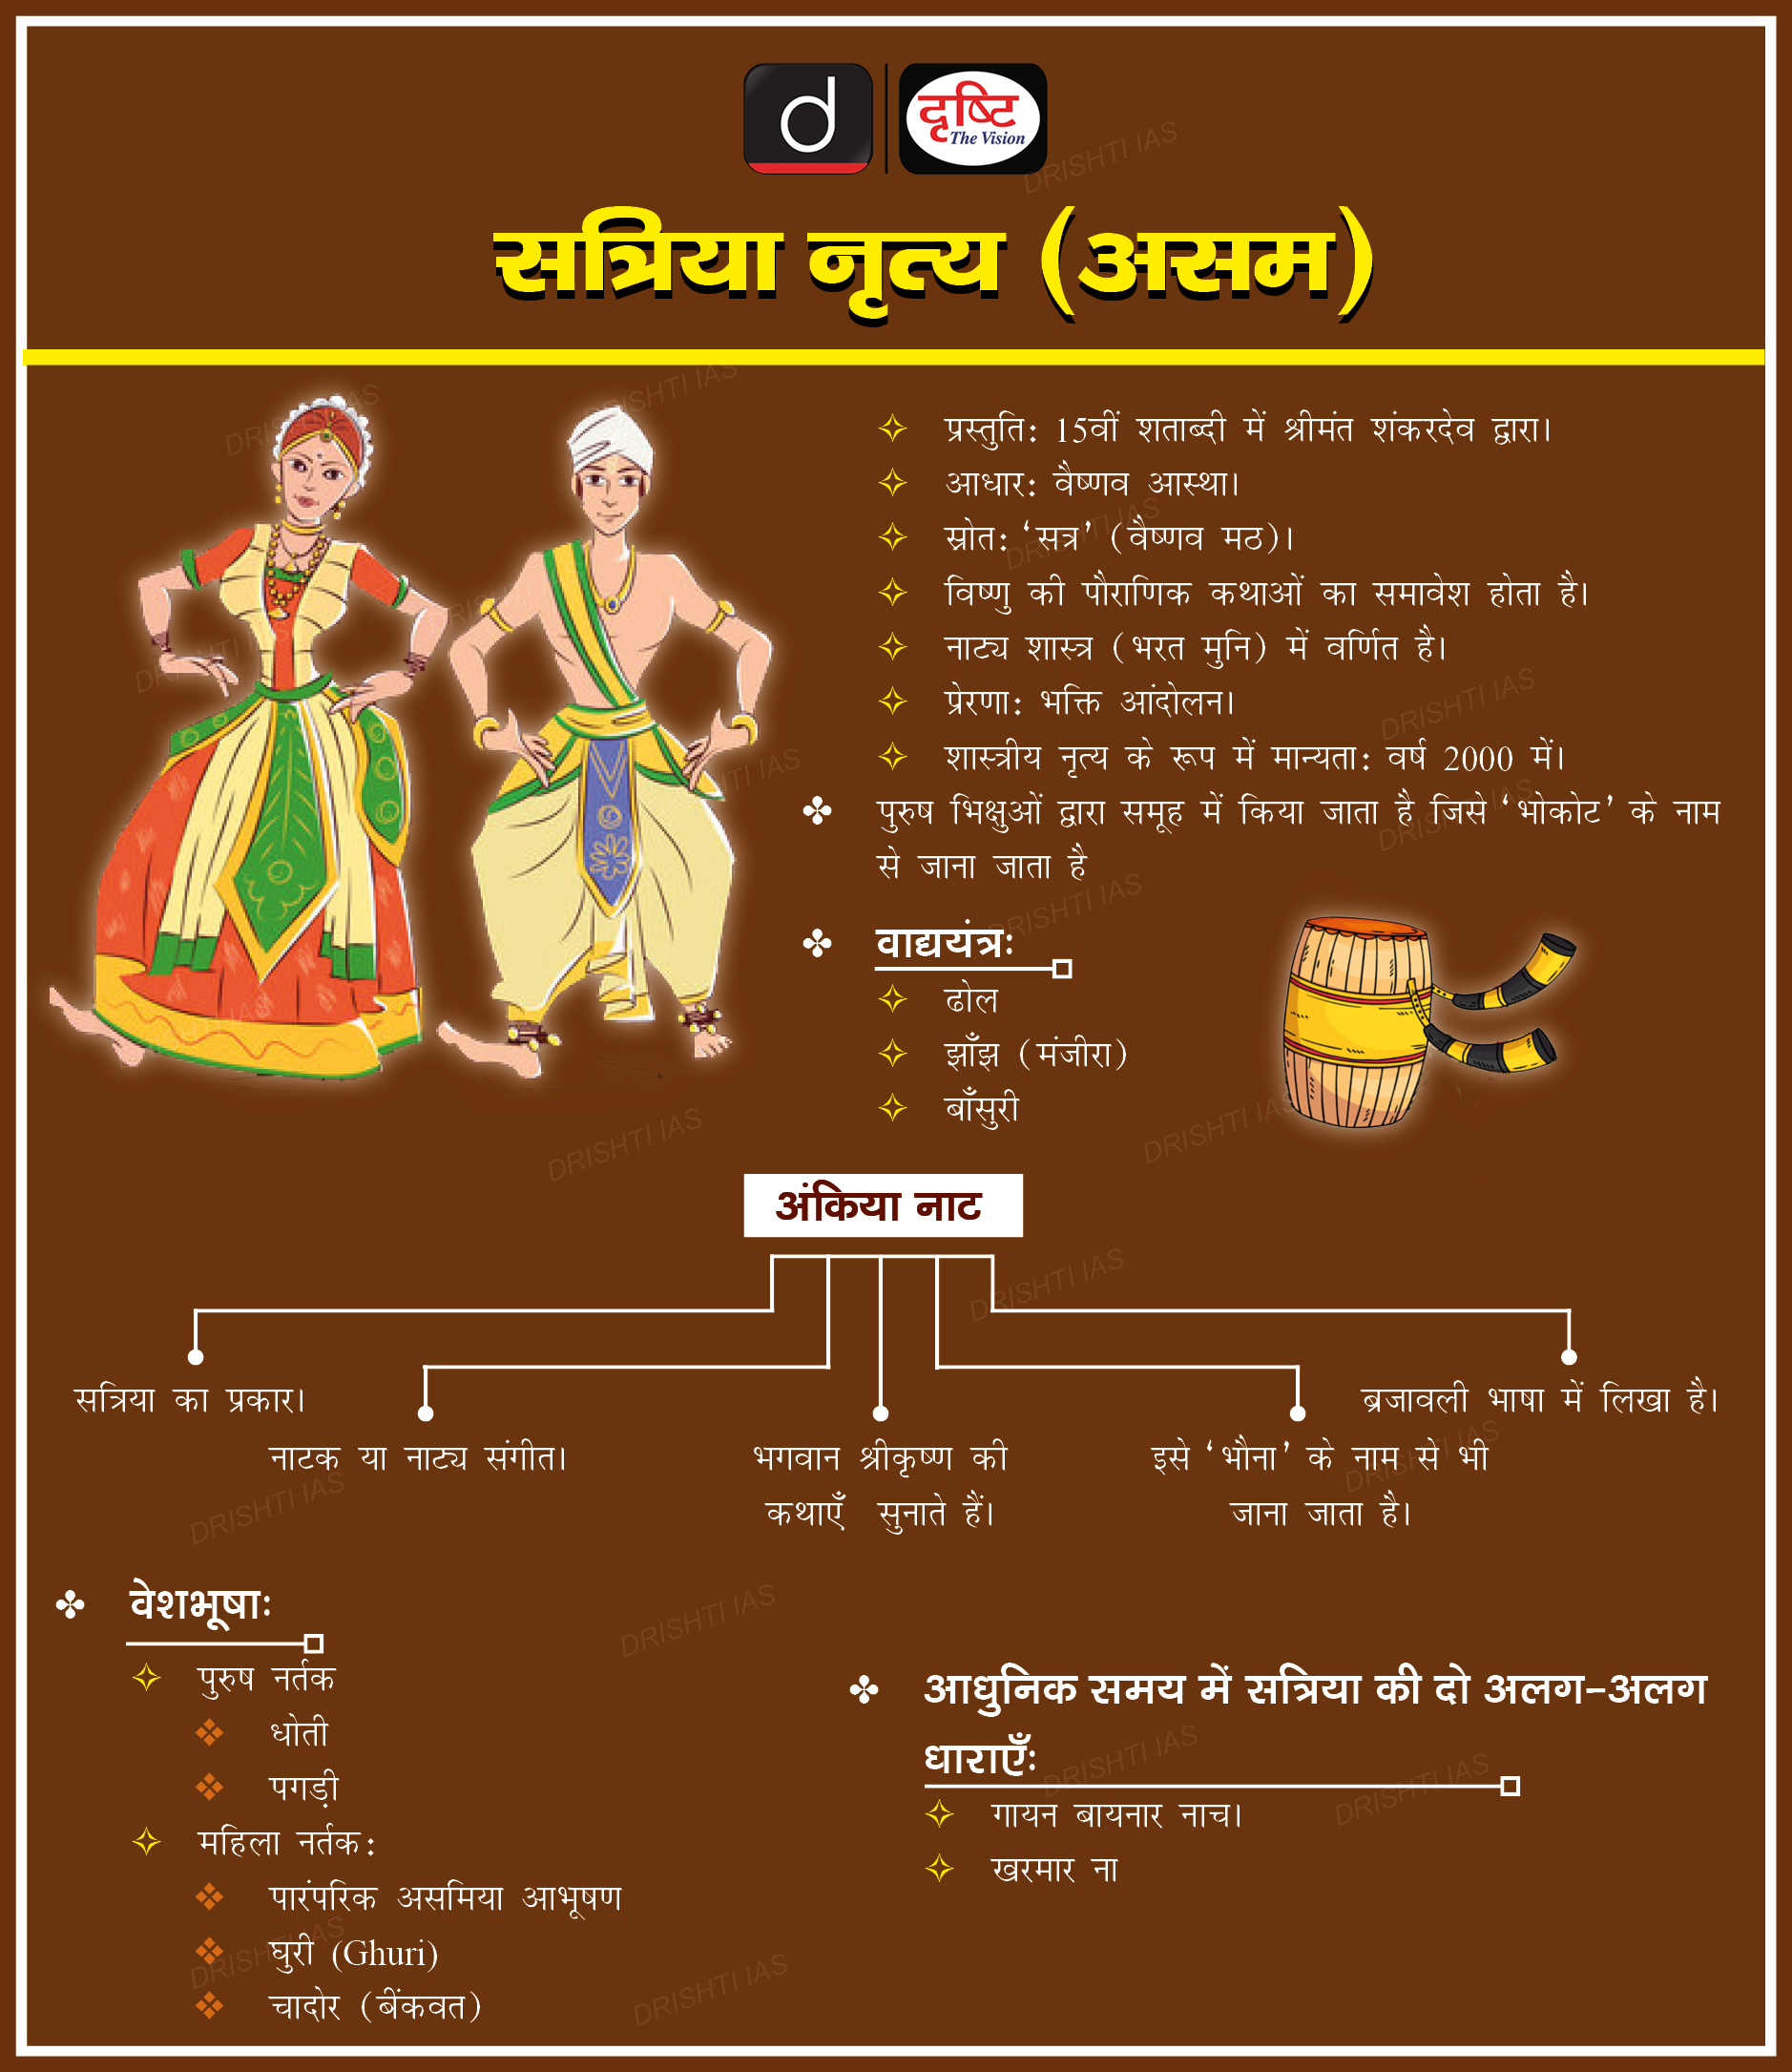 Satriya-dance